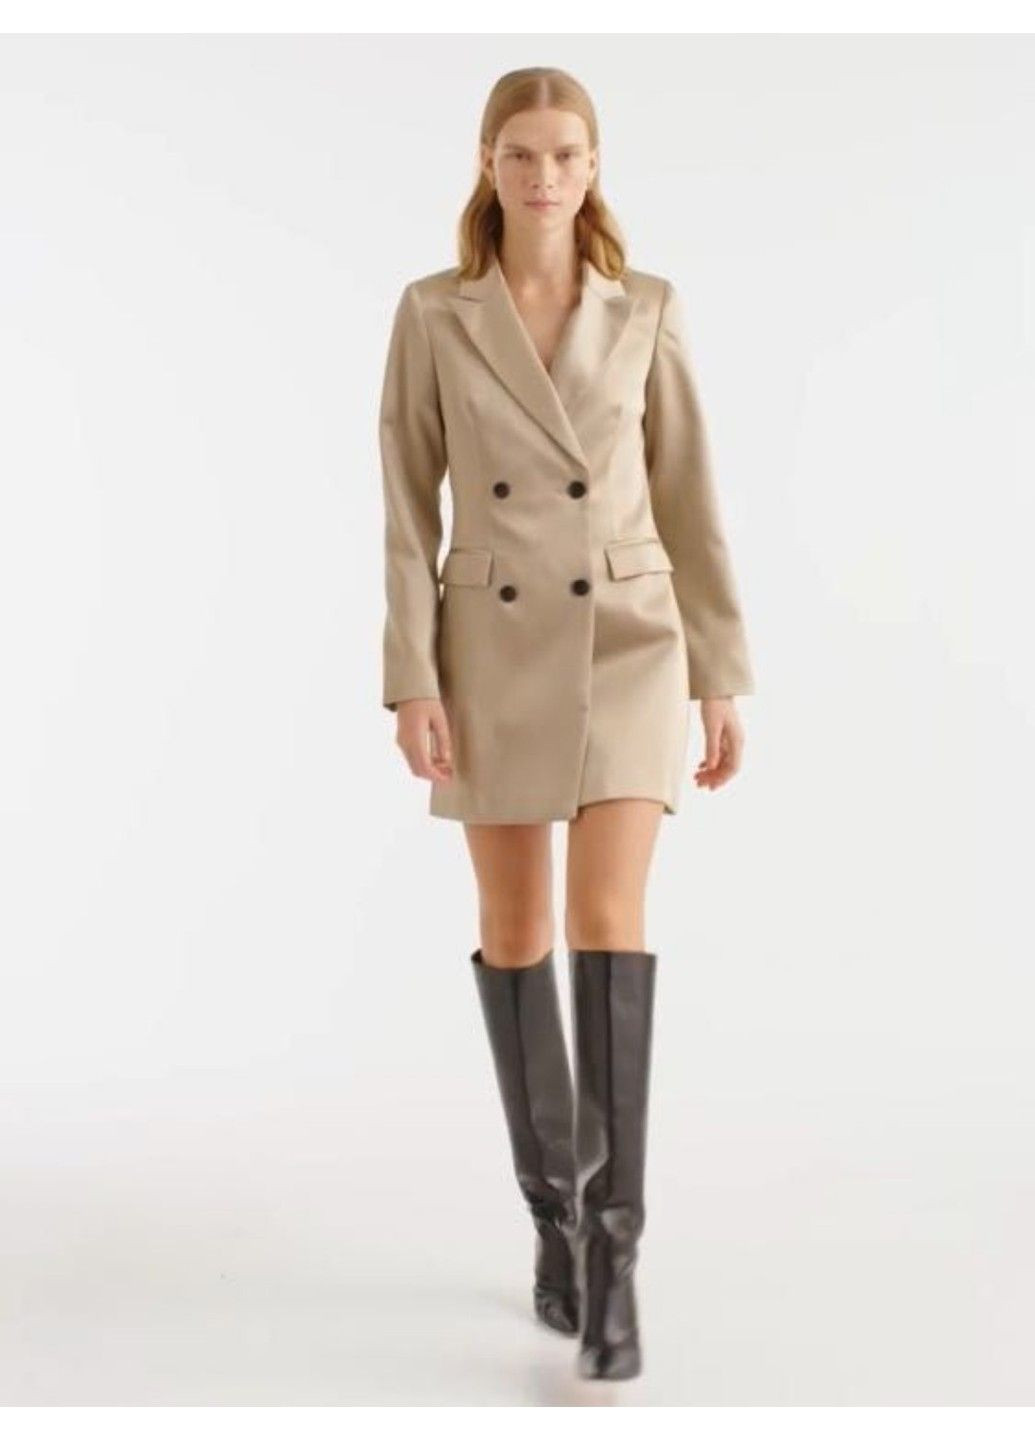 Светло-бежевое деловое женское атласное платье-пиджак н&м (56662) м светло-бежевое H&M